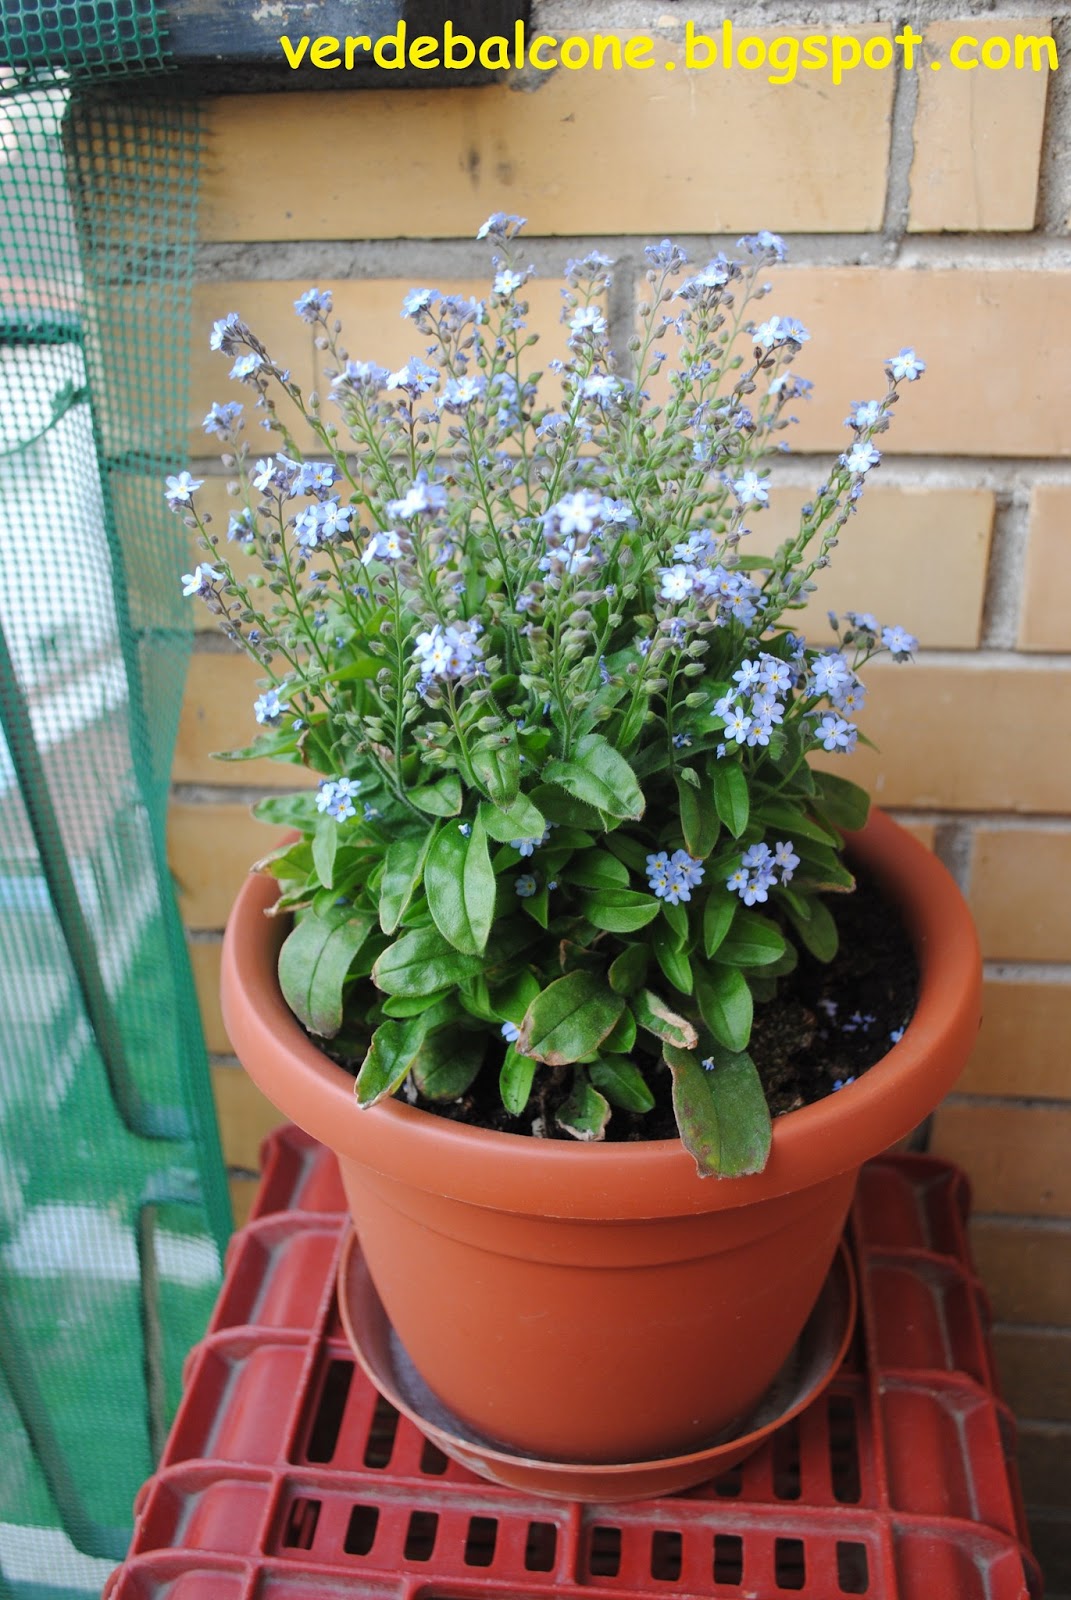 Verde balcone.: Non ti scordar di me (Myosotis), fiore utile e meraviglioso.